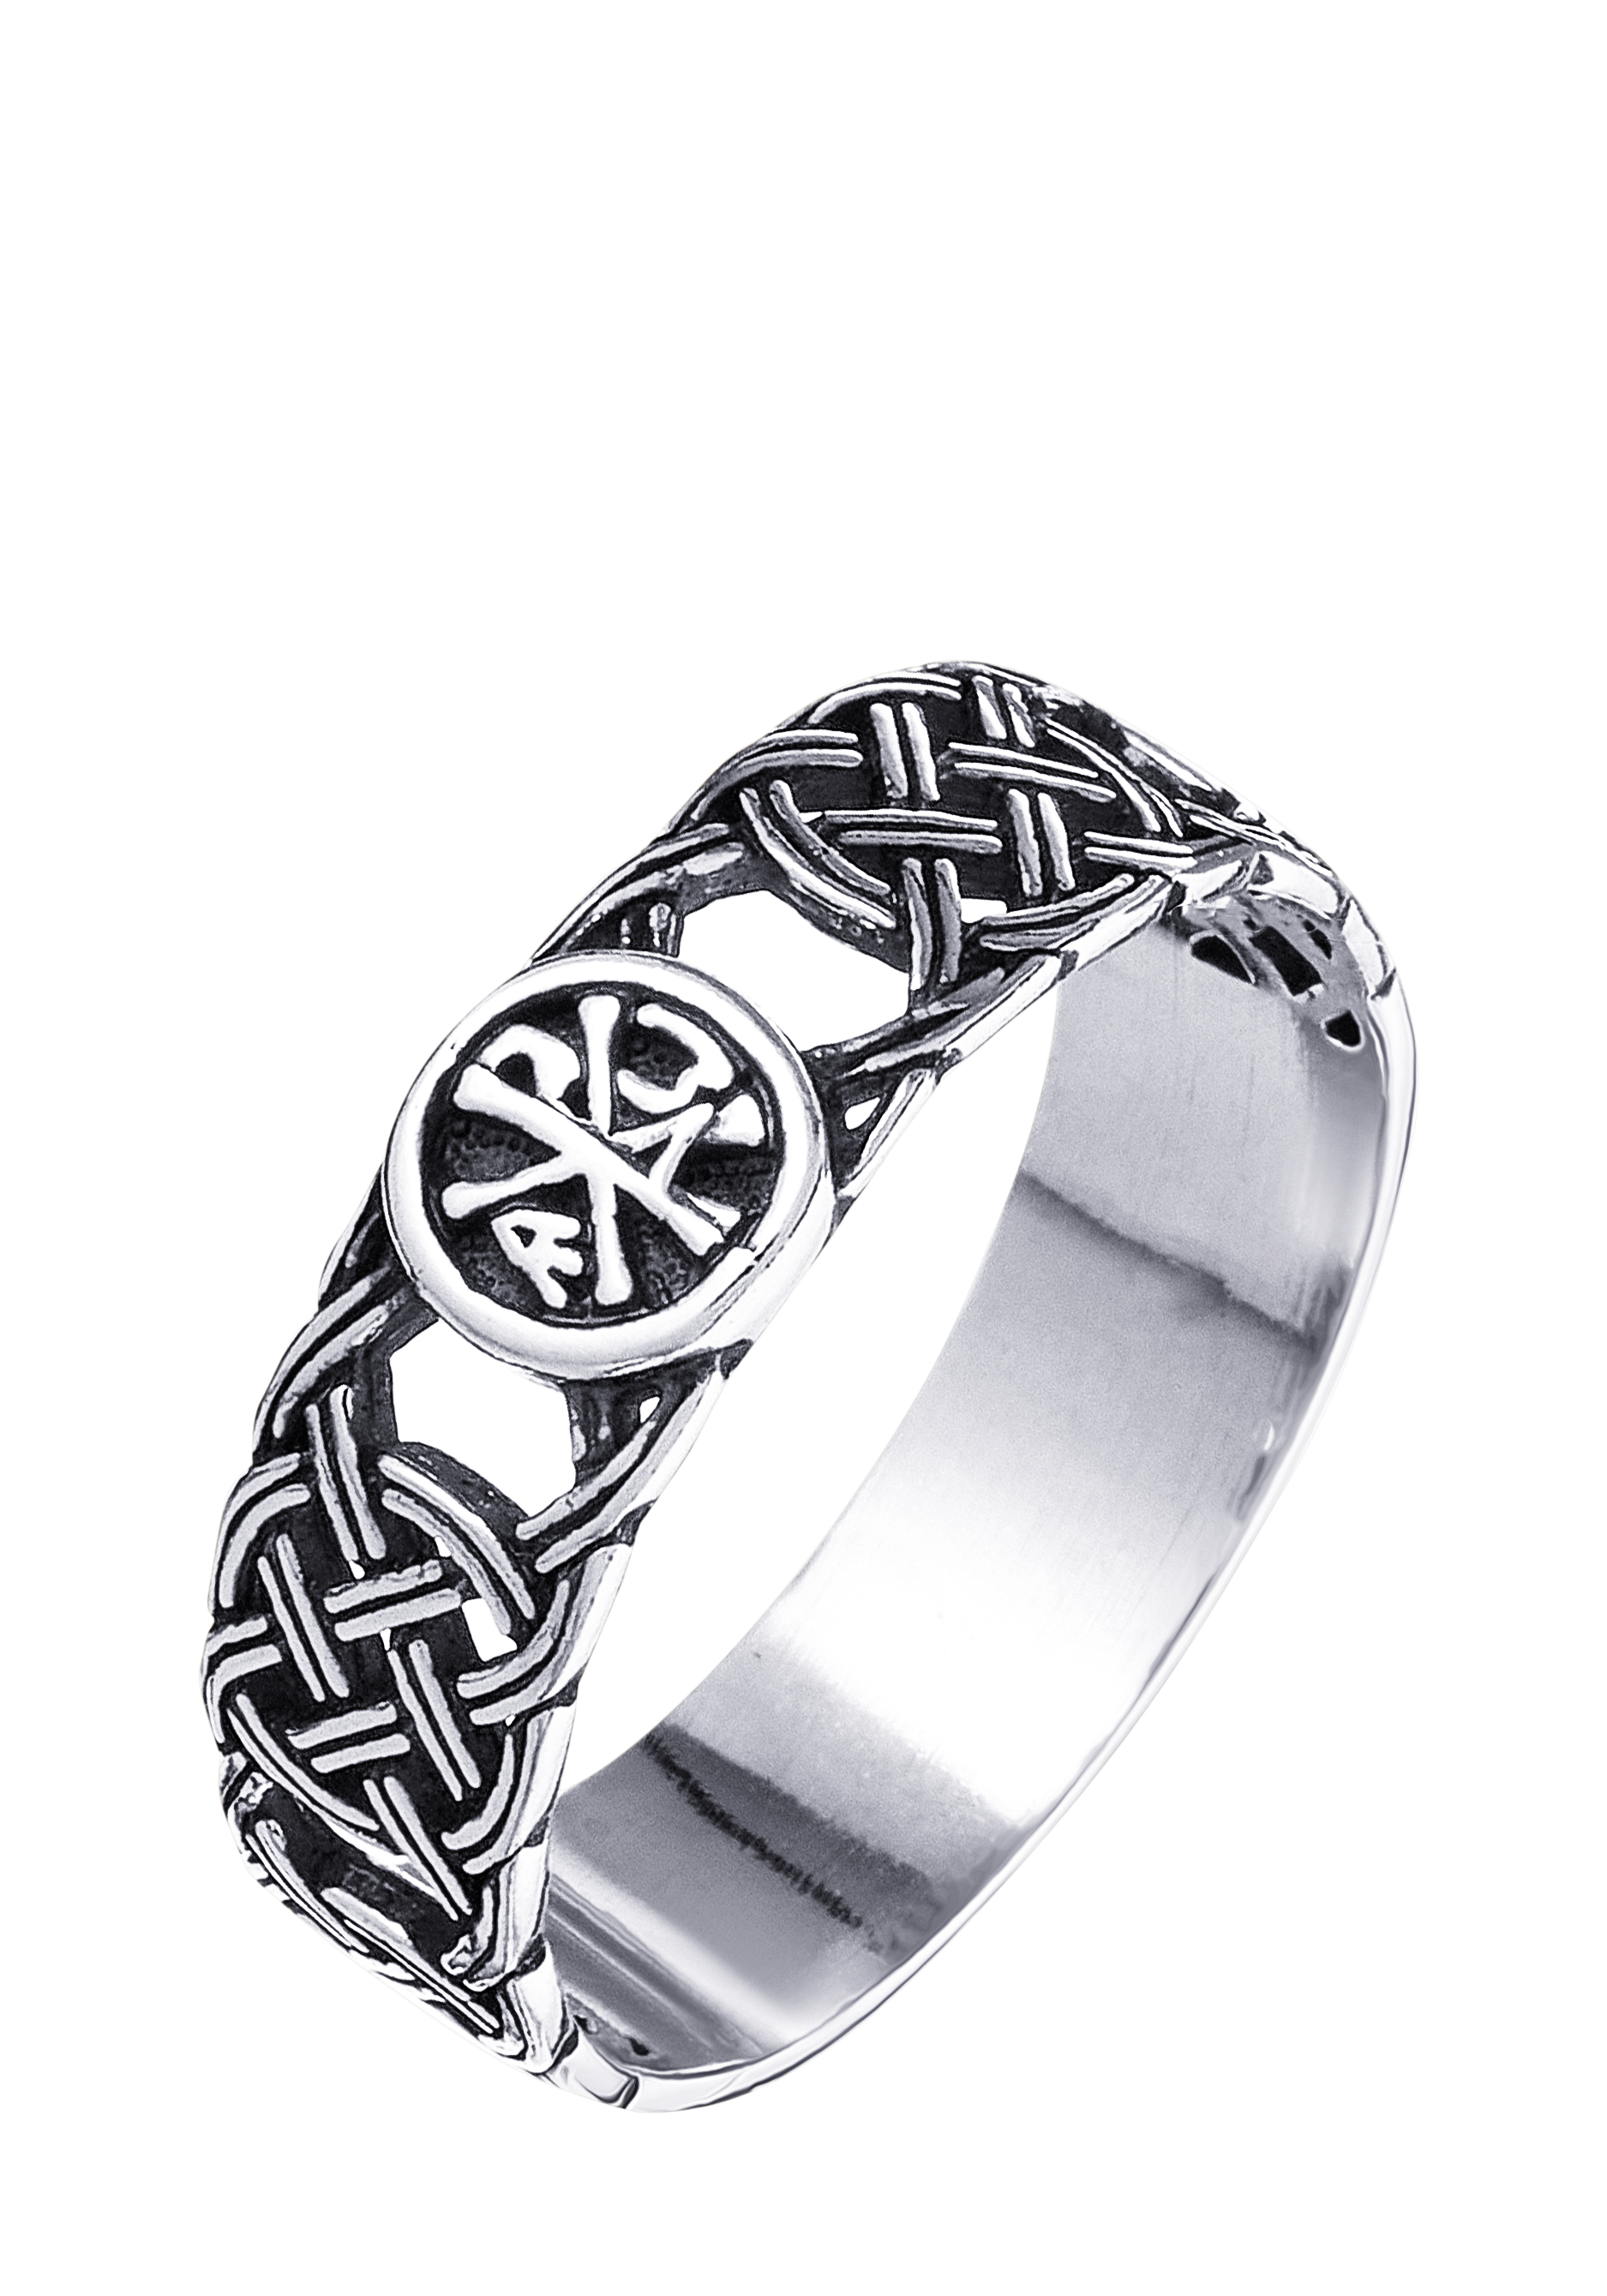 медальон хризма древнехристианская символика Кольцо серебряное Хризма